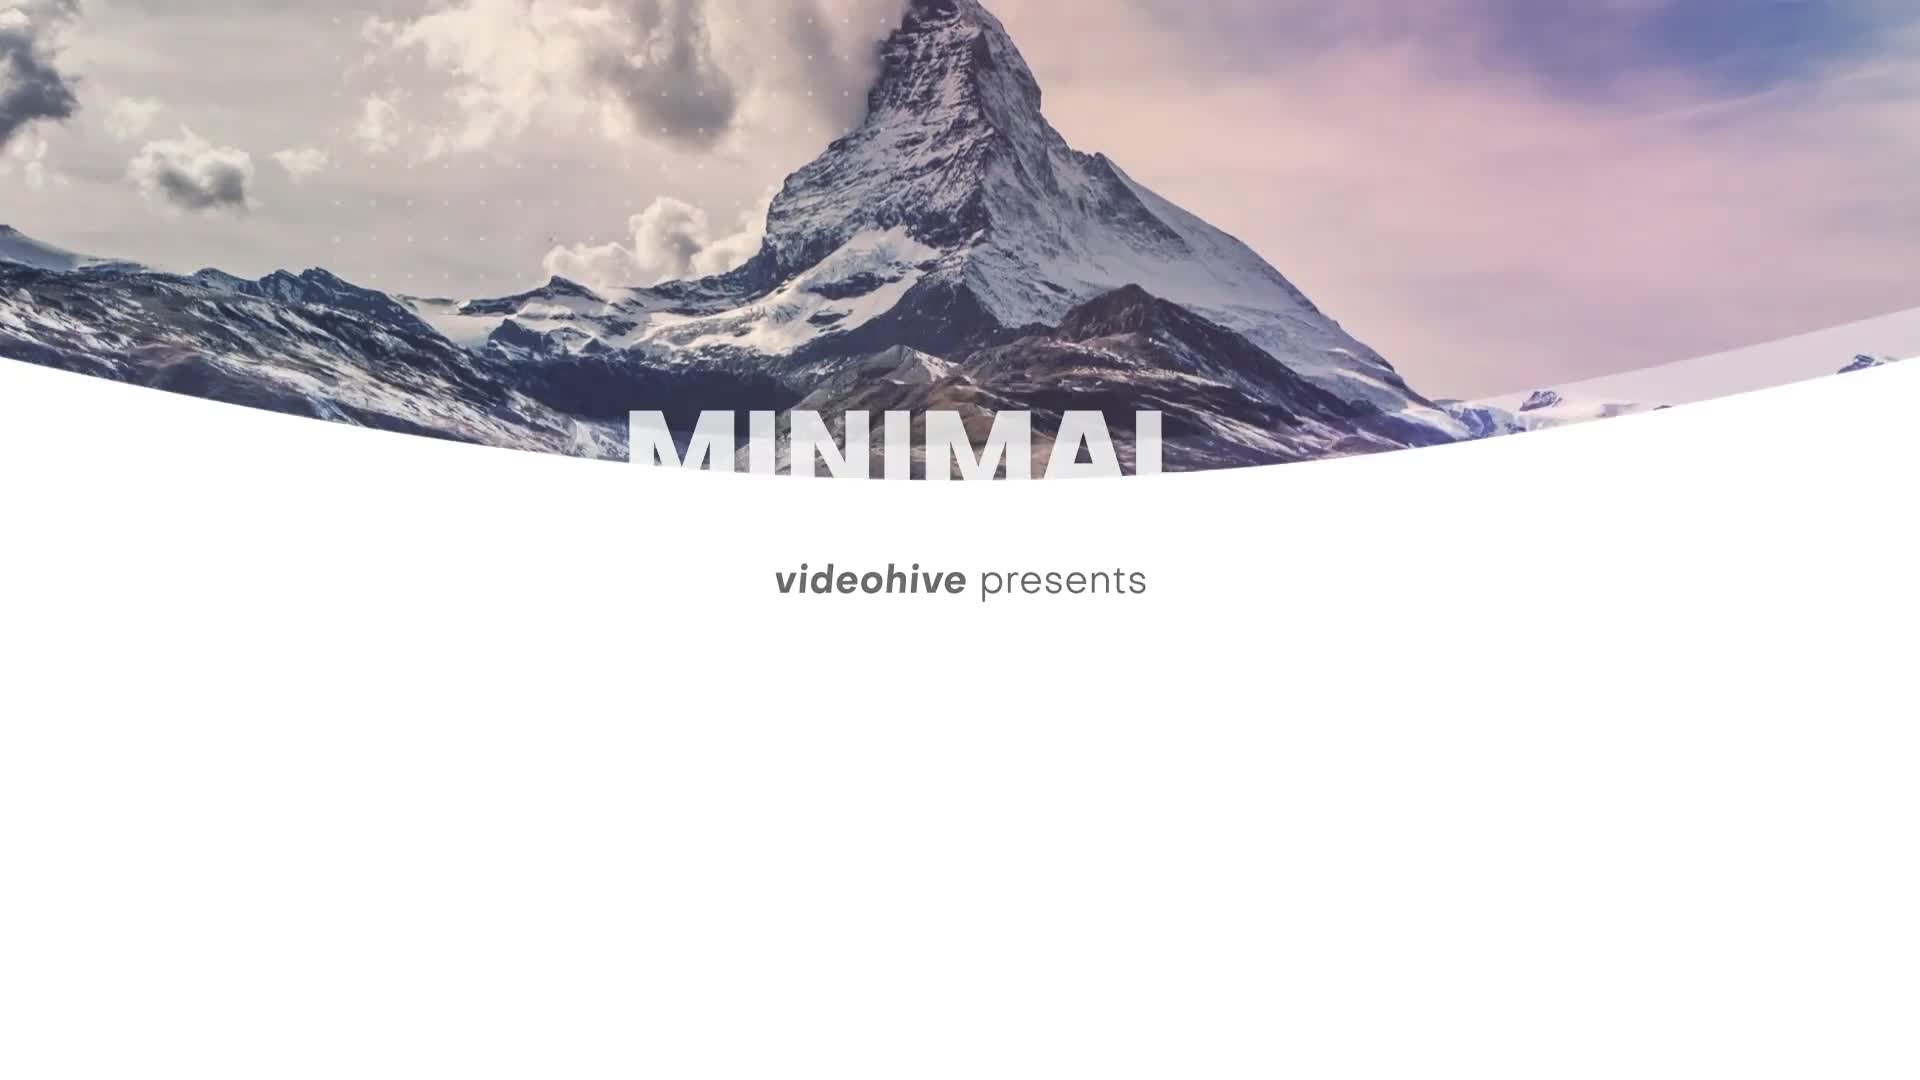 Minimal Promo Slideshow 4 | Premiere Pro Videohive 36469496 Premiere Pro Image 1